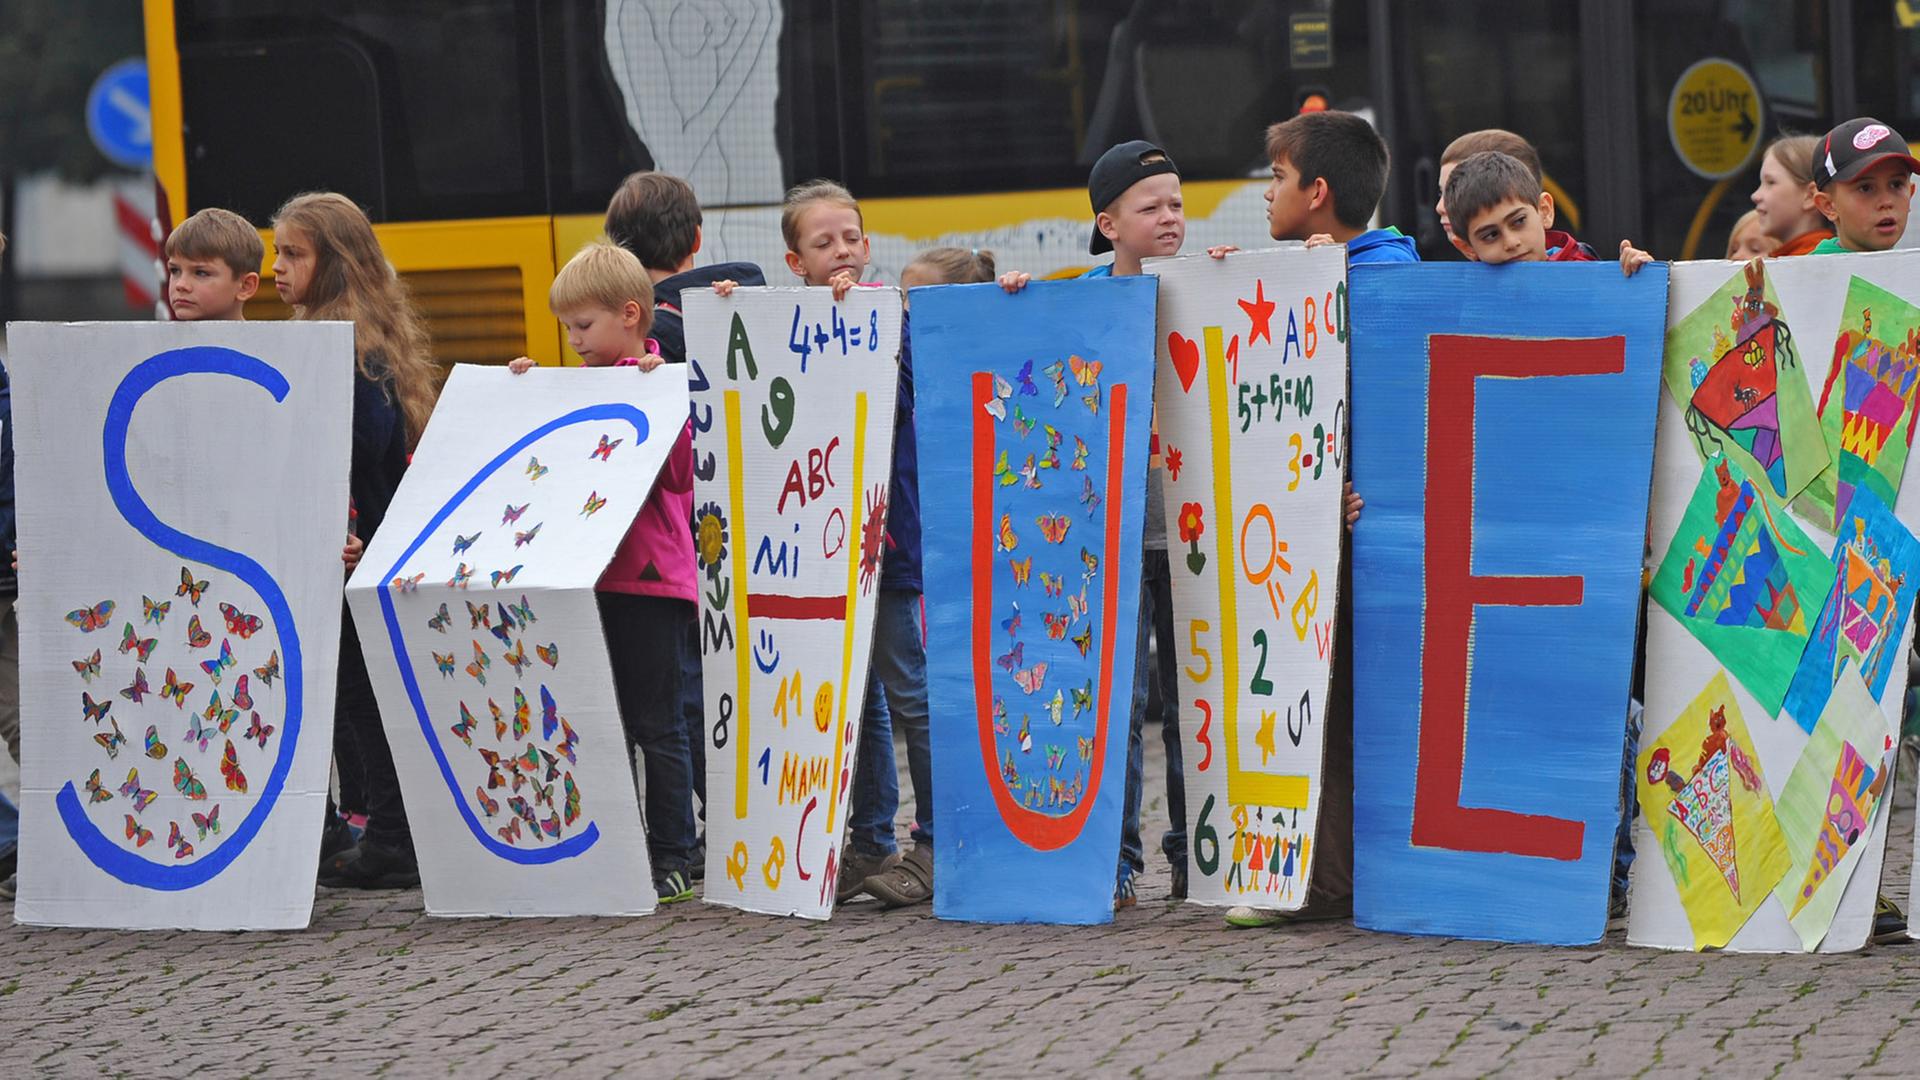 Dresdner Grundschüler starten mit der Schrift "Schule" am 04.09.2014 in Dresden (Sachsen) vor der Semperoper die jährliche Kampagne "Die Schule hat begonnen".